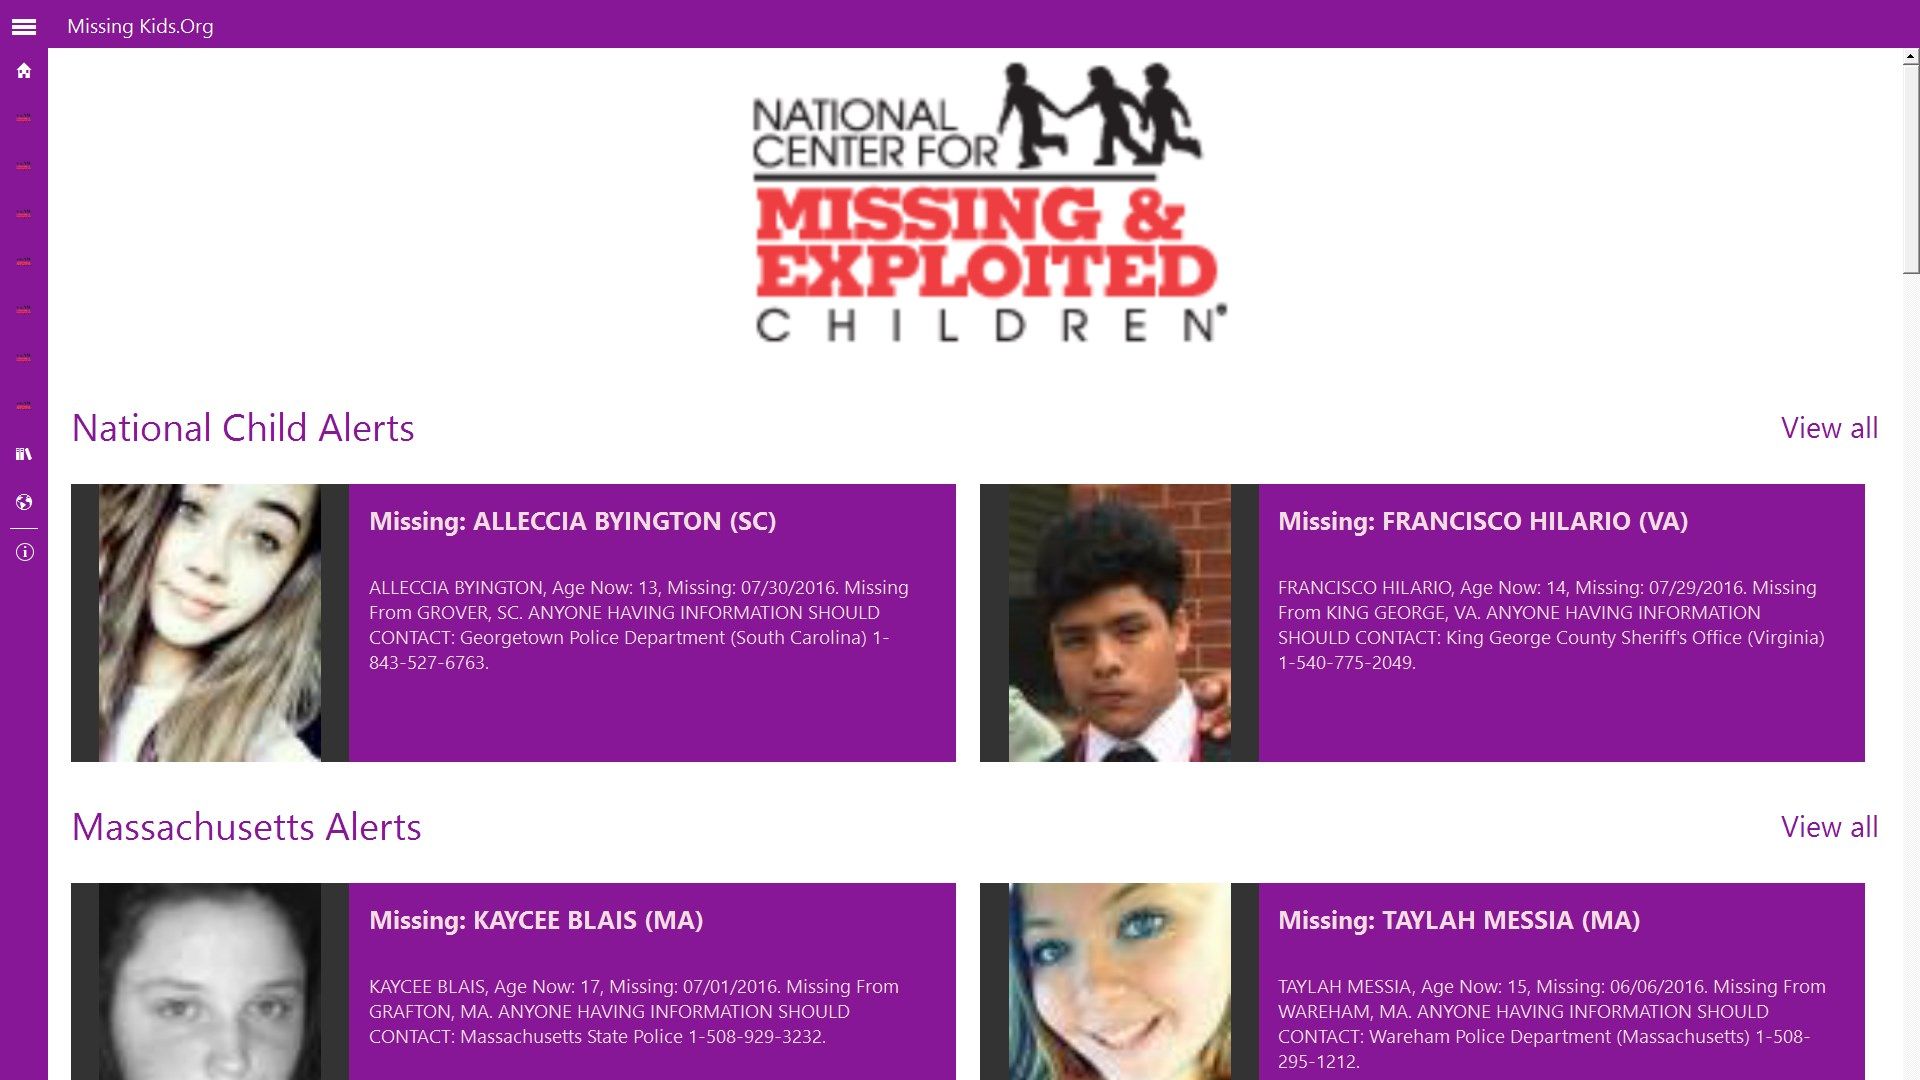 Missing Kids.org